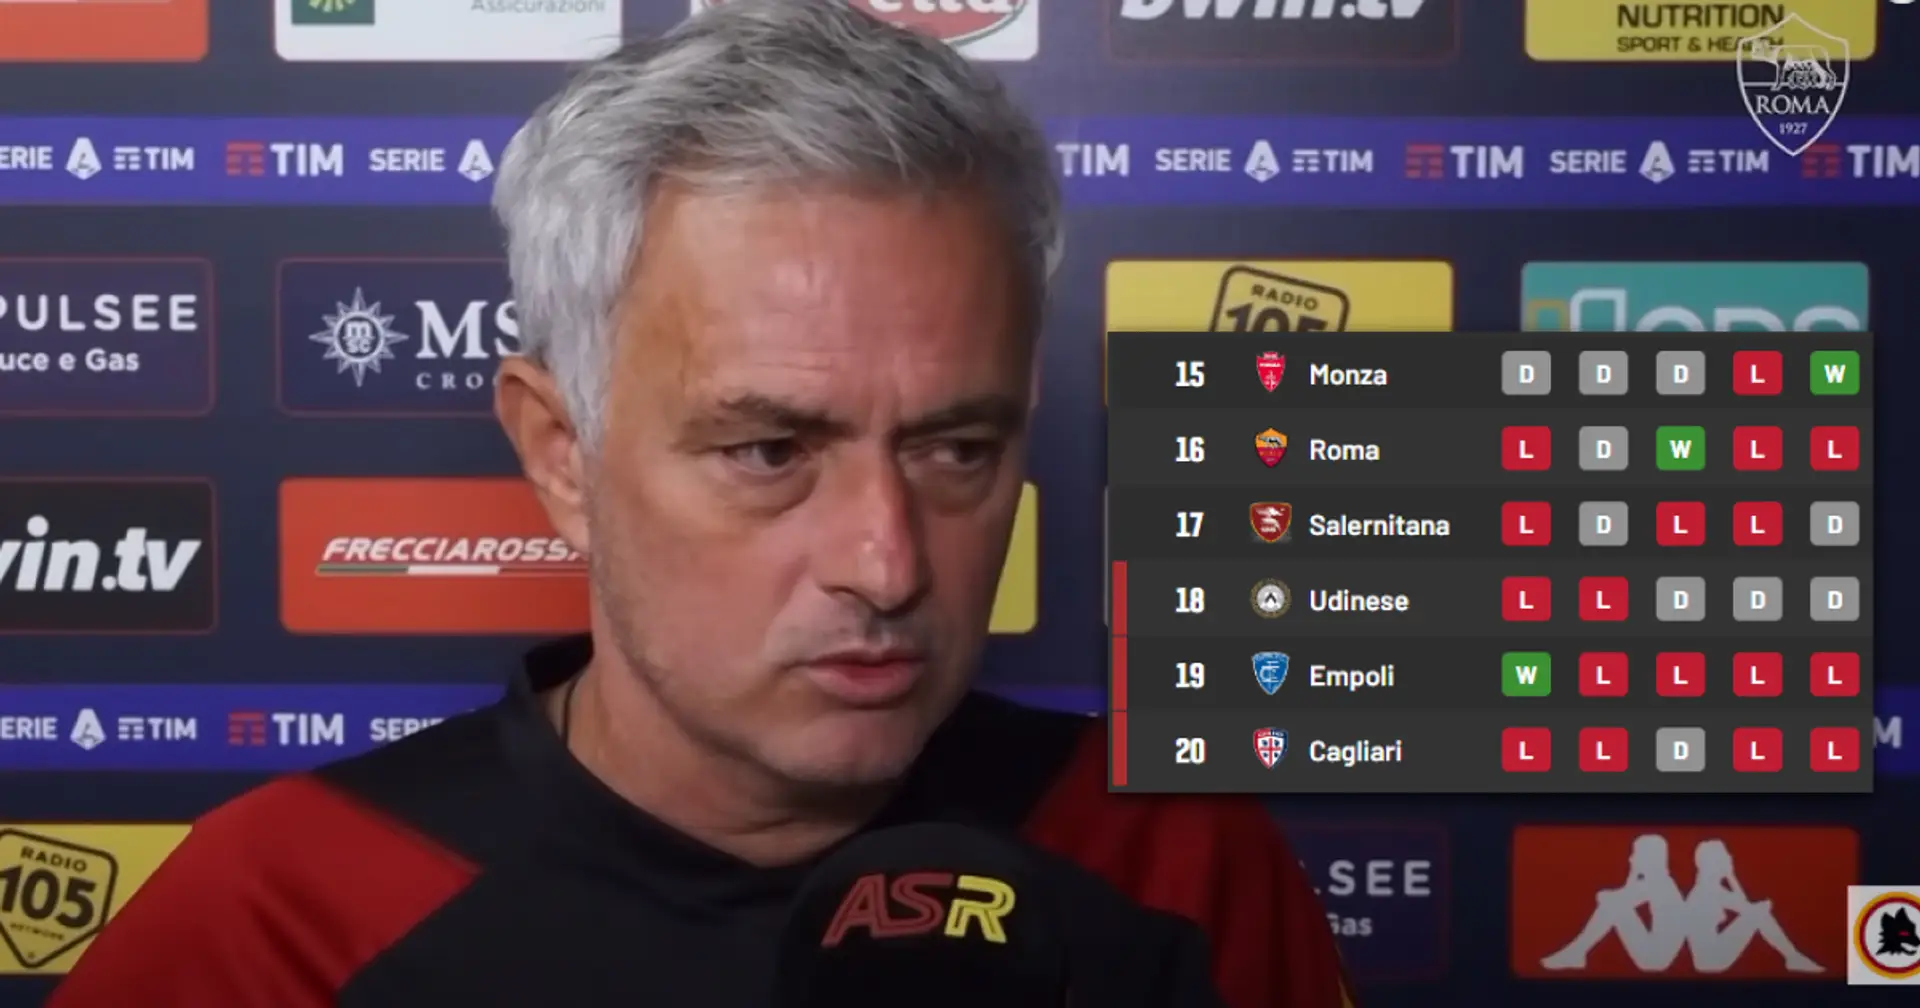 "Le pire de ma carrière": José Mourinho s'exprime sur le départ de la Roma alors que l'équipe occupe la 16e place